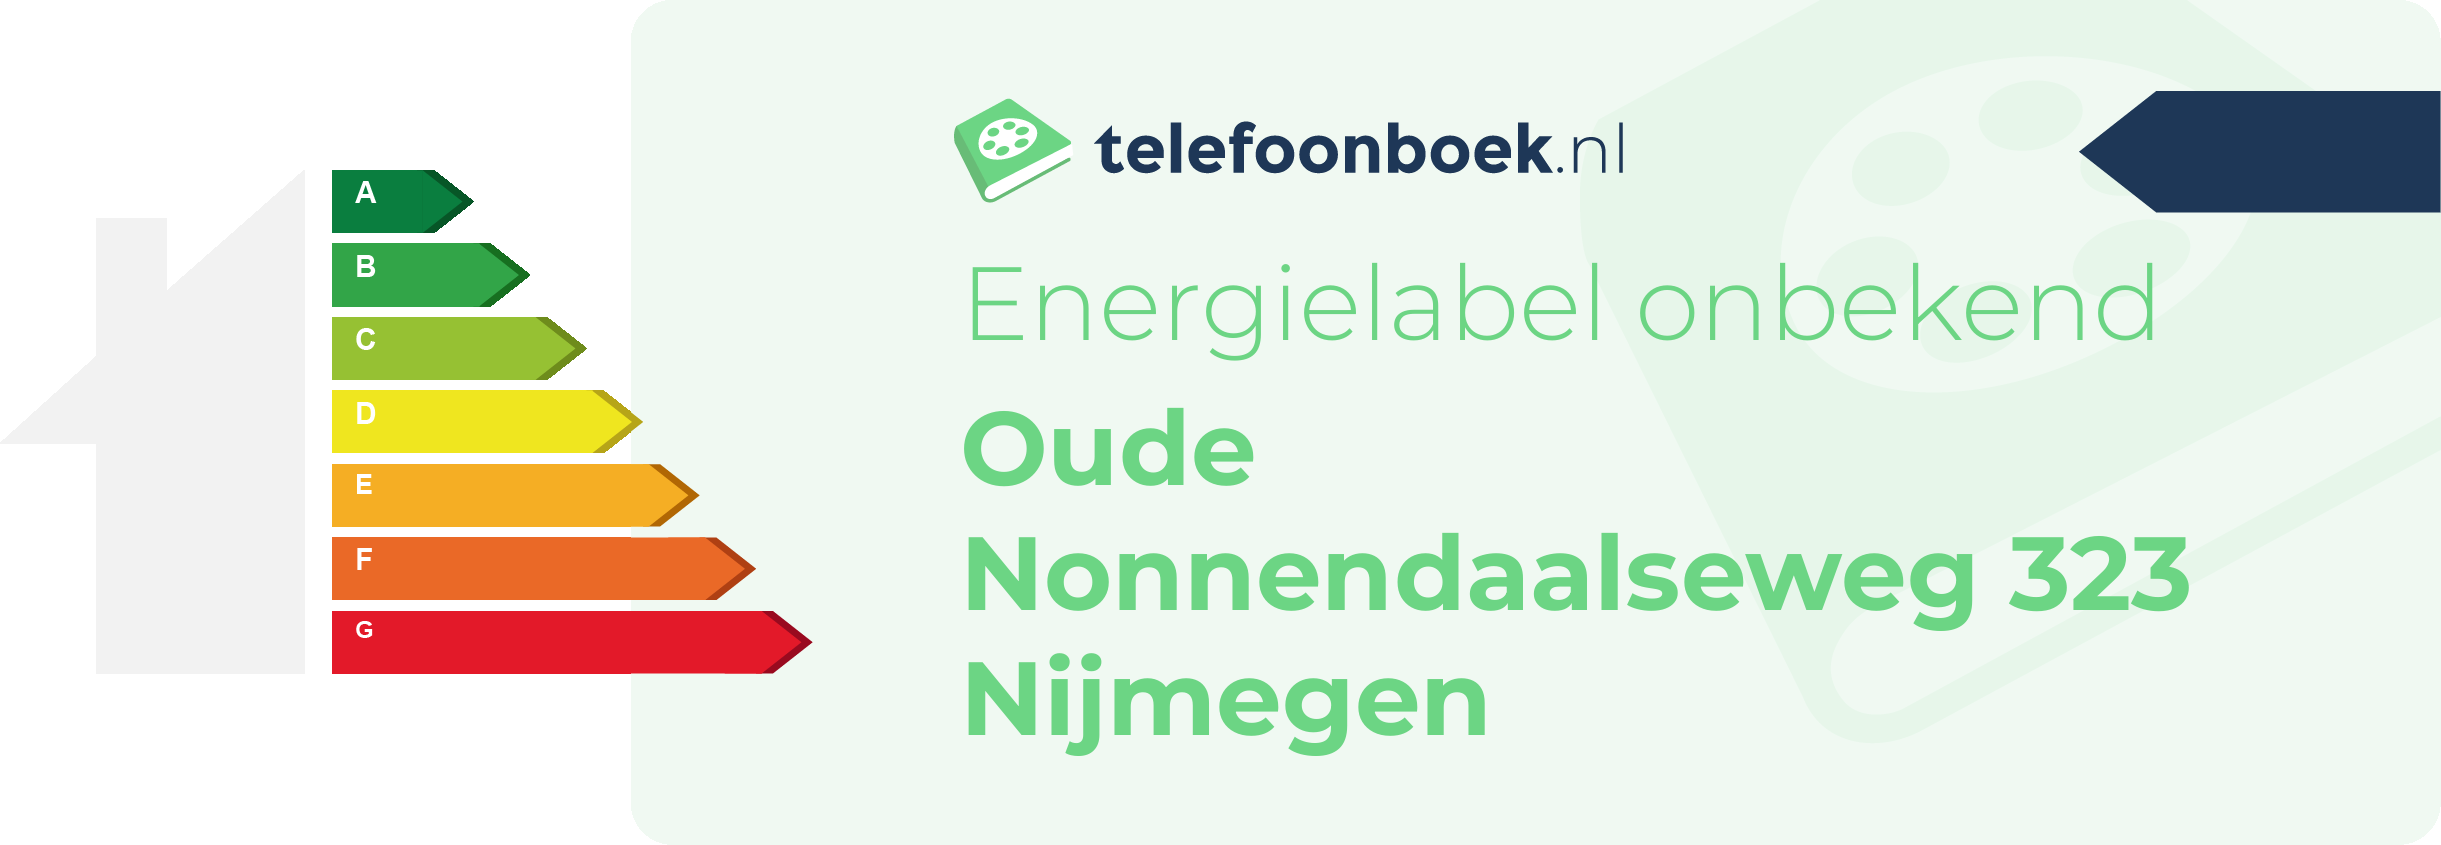 Energielabel Oude Nonnendaalseweg 323 Nijmegen